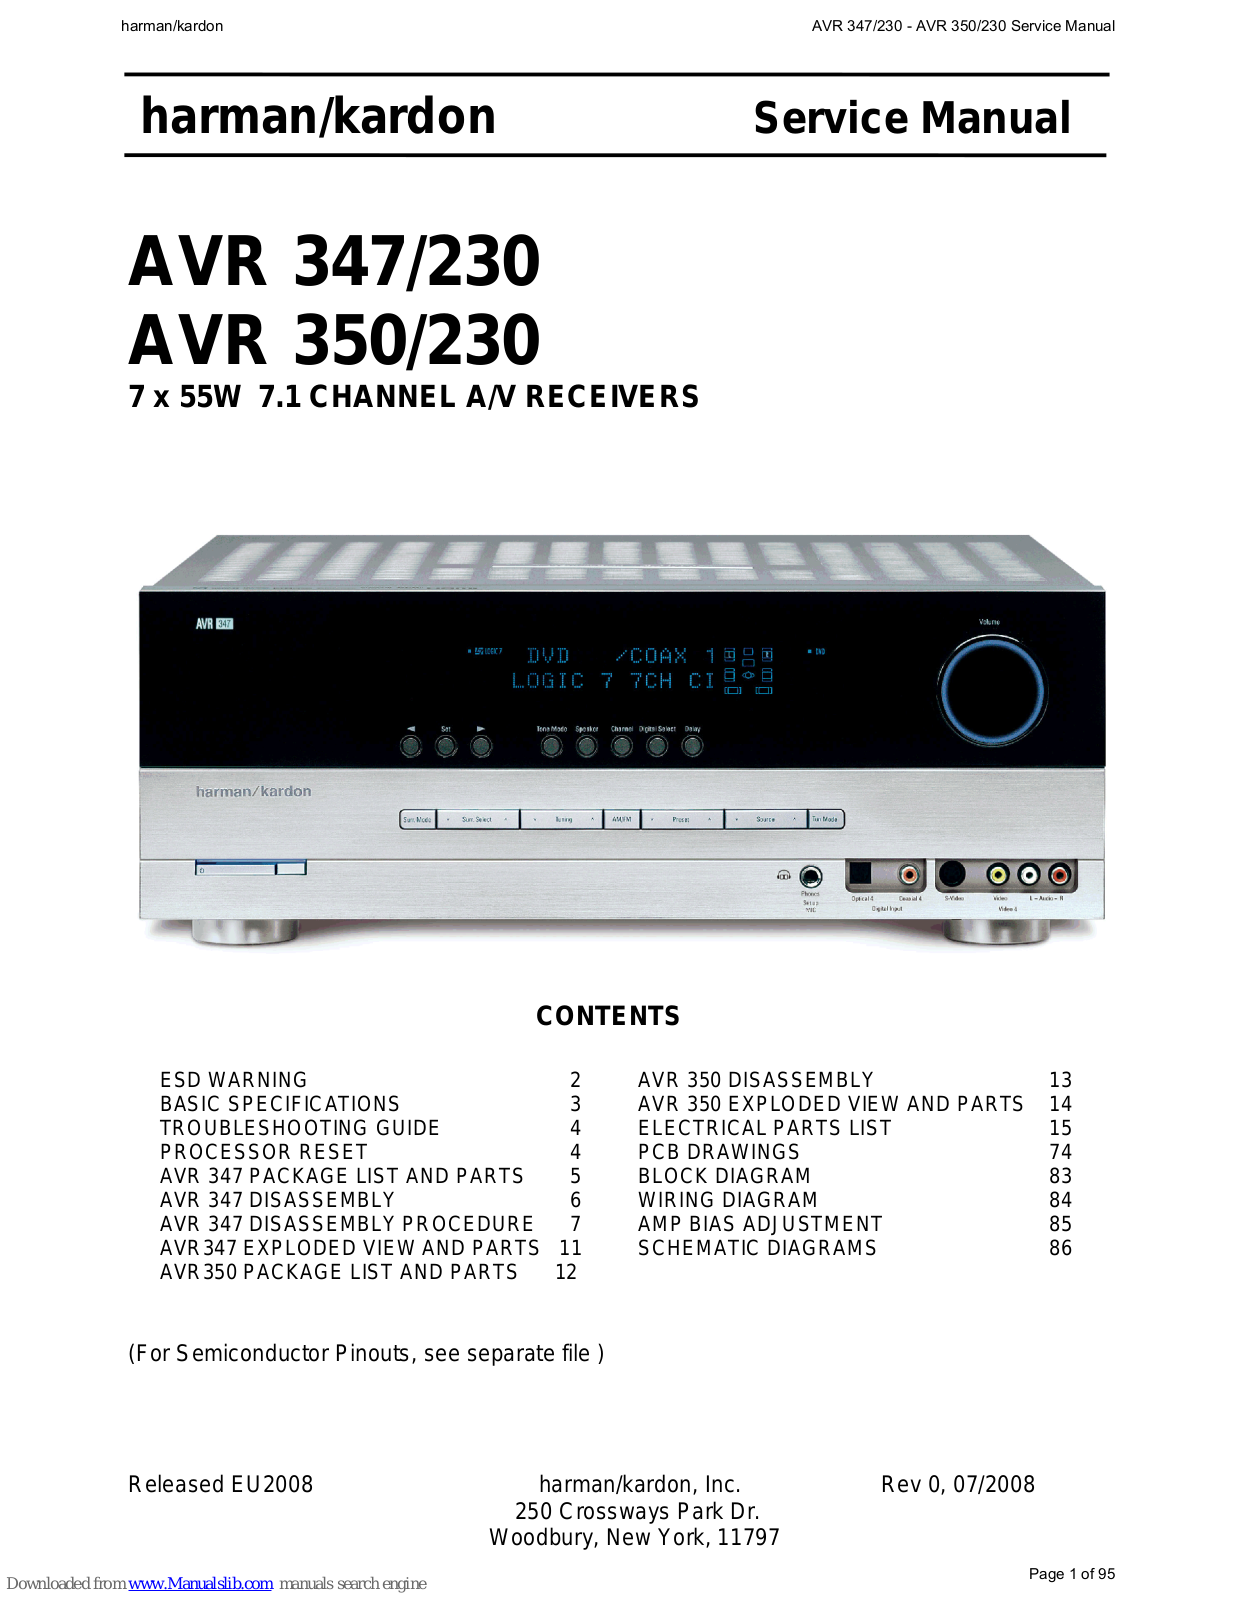 Harman-Kardon AVR 347-230, AVR 350-230 User Manual